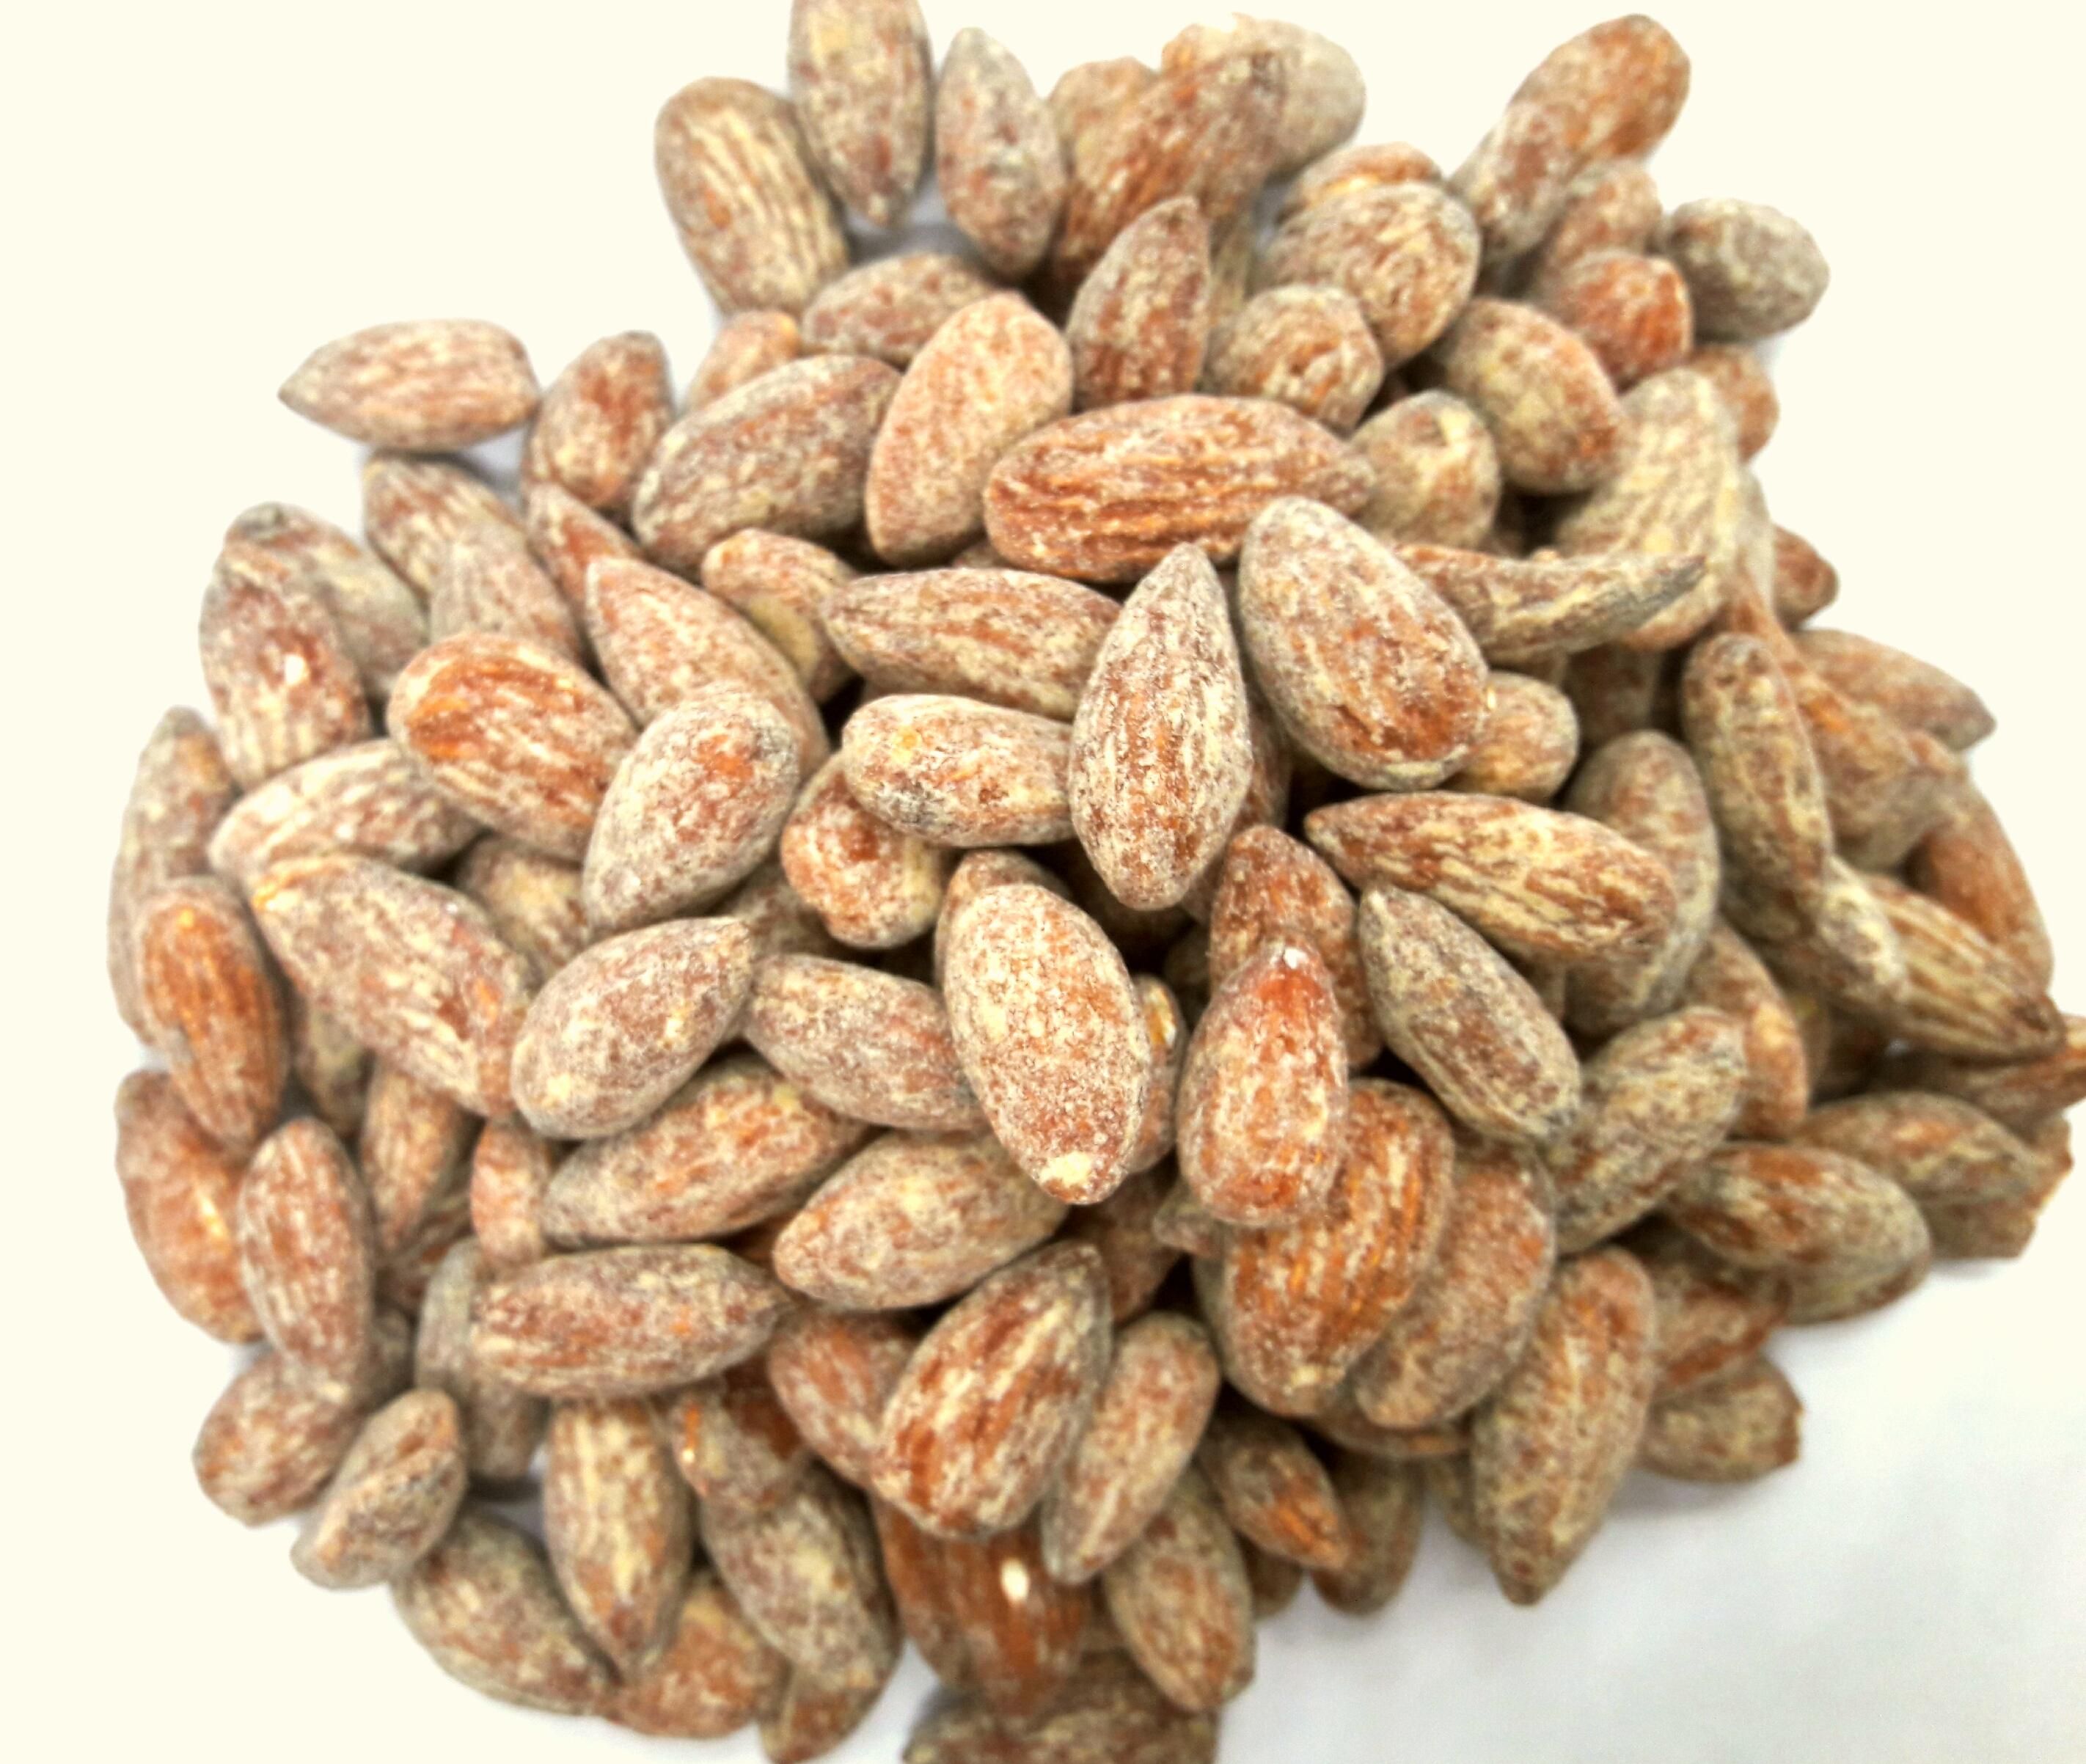 Hạnh Nhân Nguyên Hạt Ngào Mật Ong Heritage - Honey Roasted Almond 500g